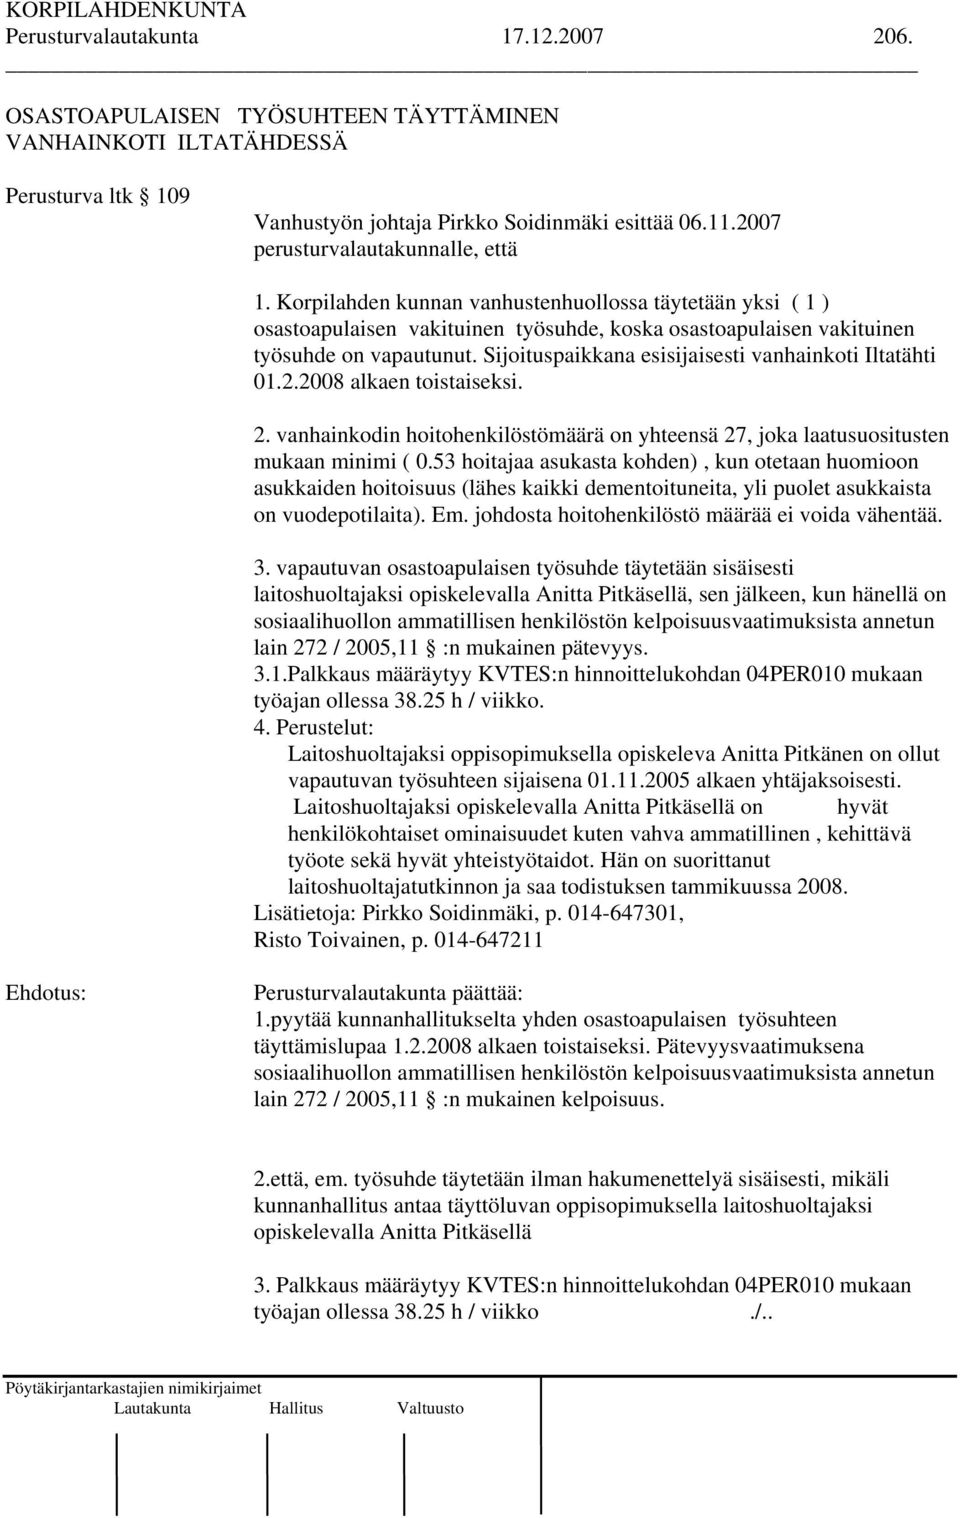 Sijoituspaikkana esisijaisesti vanhainkoti Iltatähti 01.2.2008 alkaen toistaiseksi. 2. vanhainkodin hoitohenkilöstömäärä on yhteensä 27, joka laatusuositusten mukaan minimi ( 0.